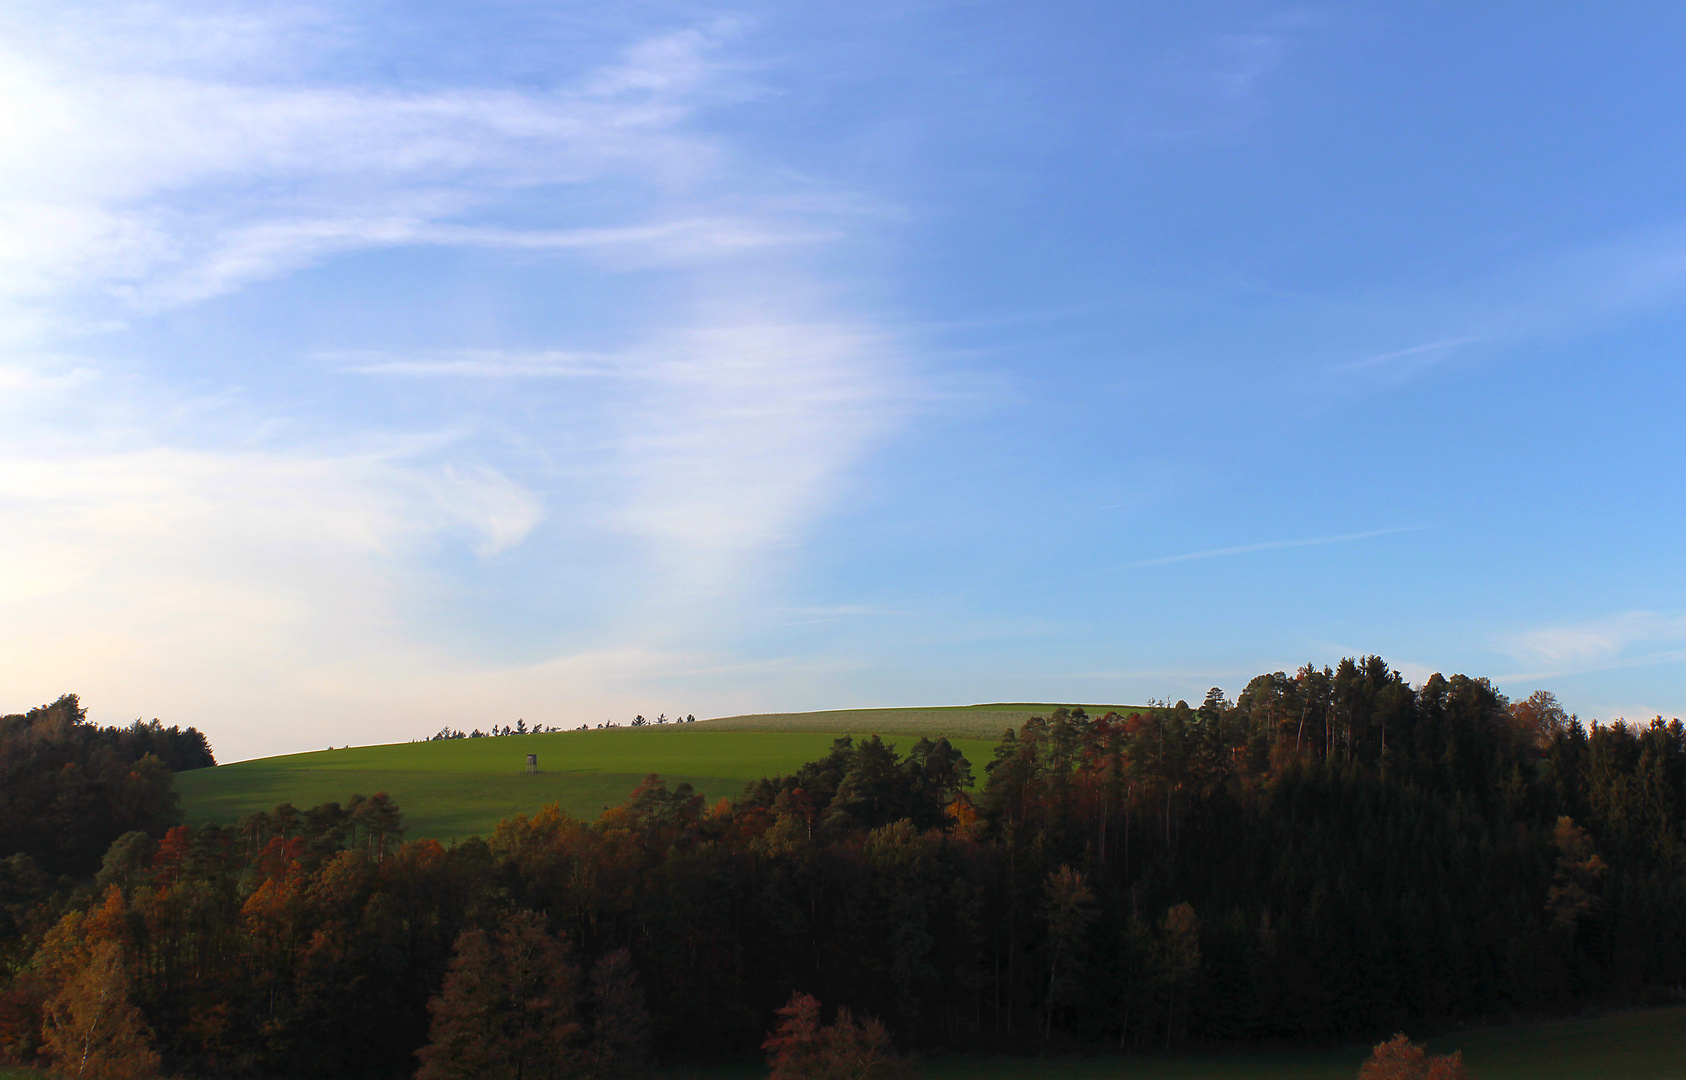 Herbstwald mit Hochsitz